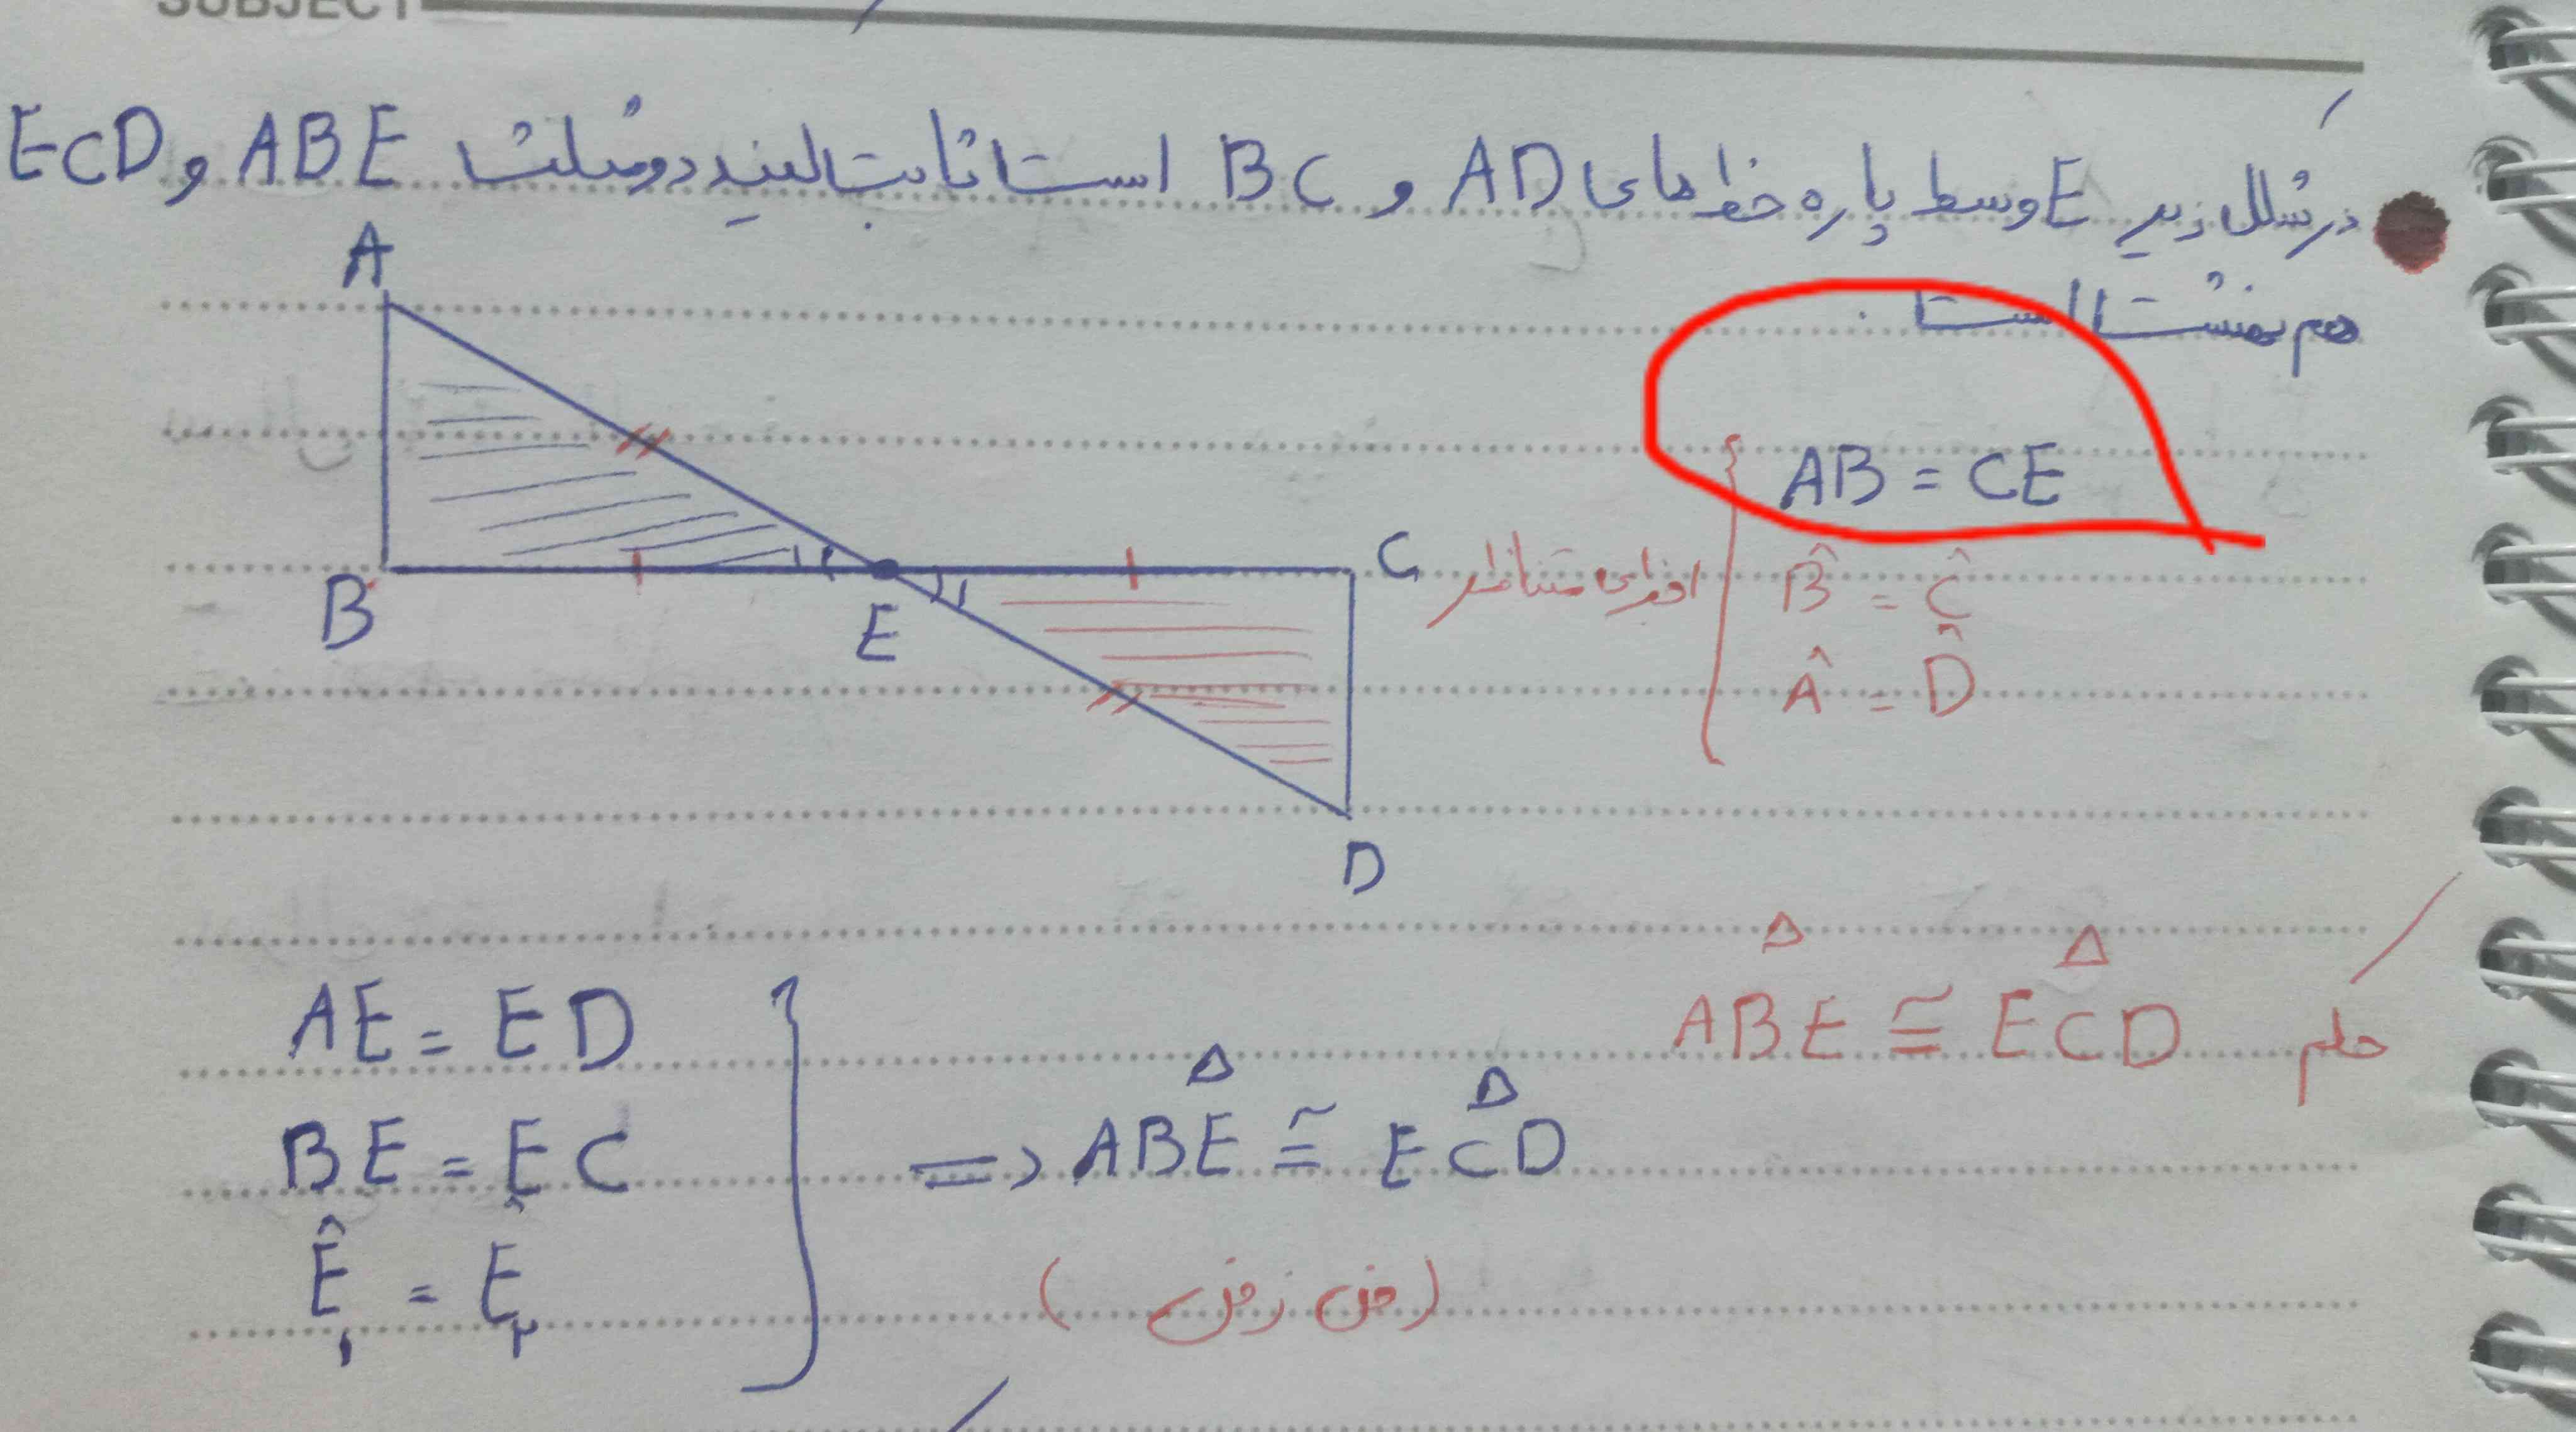 کسی میدونه چرا AB=CE
چرا AB=CDنشده؟